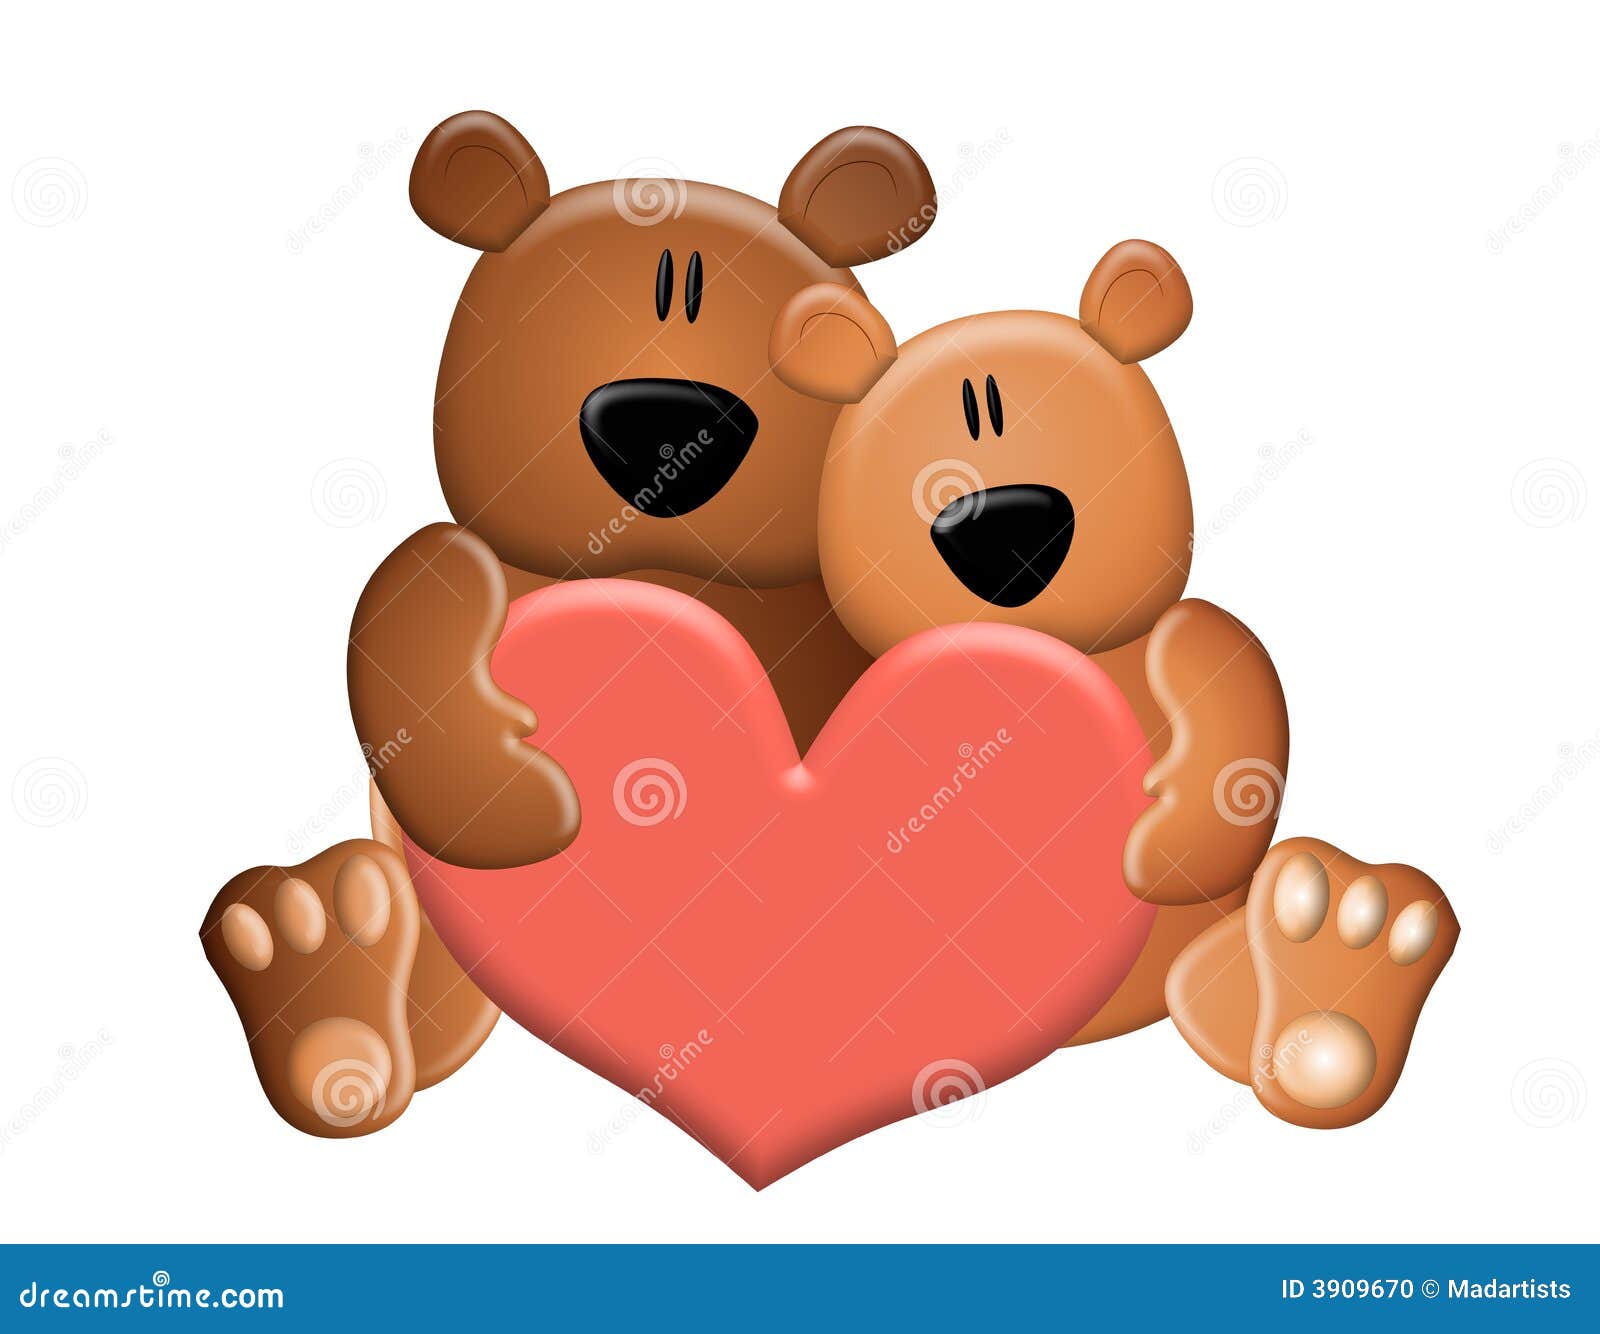 clipart teddy bear with heart - photo #36